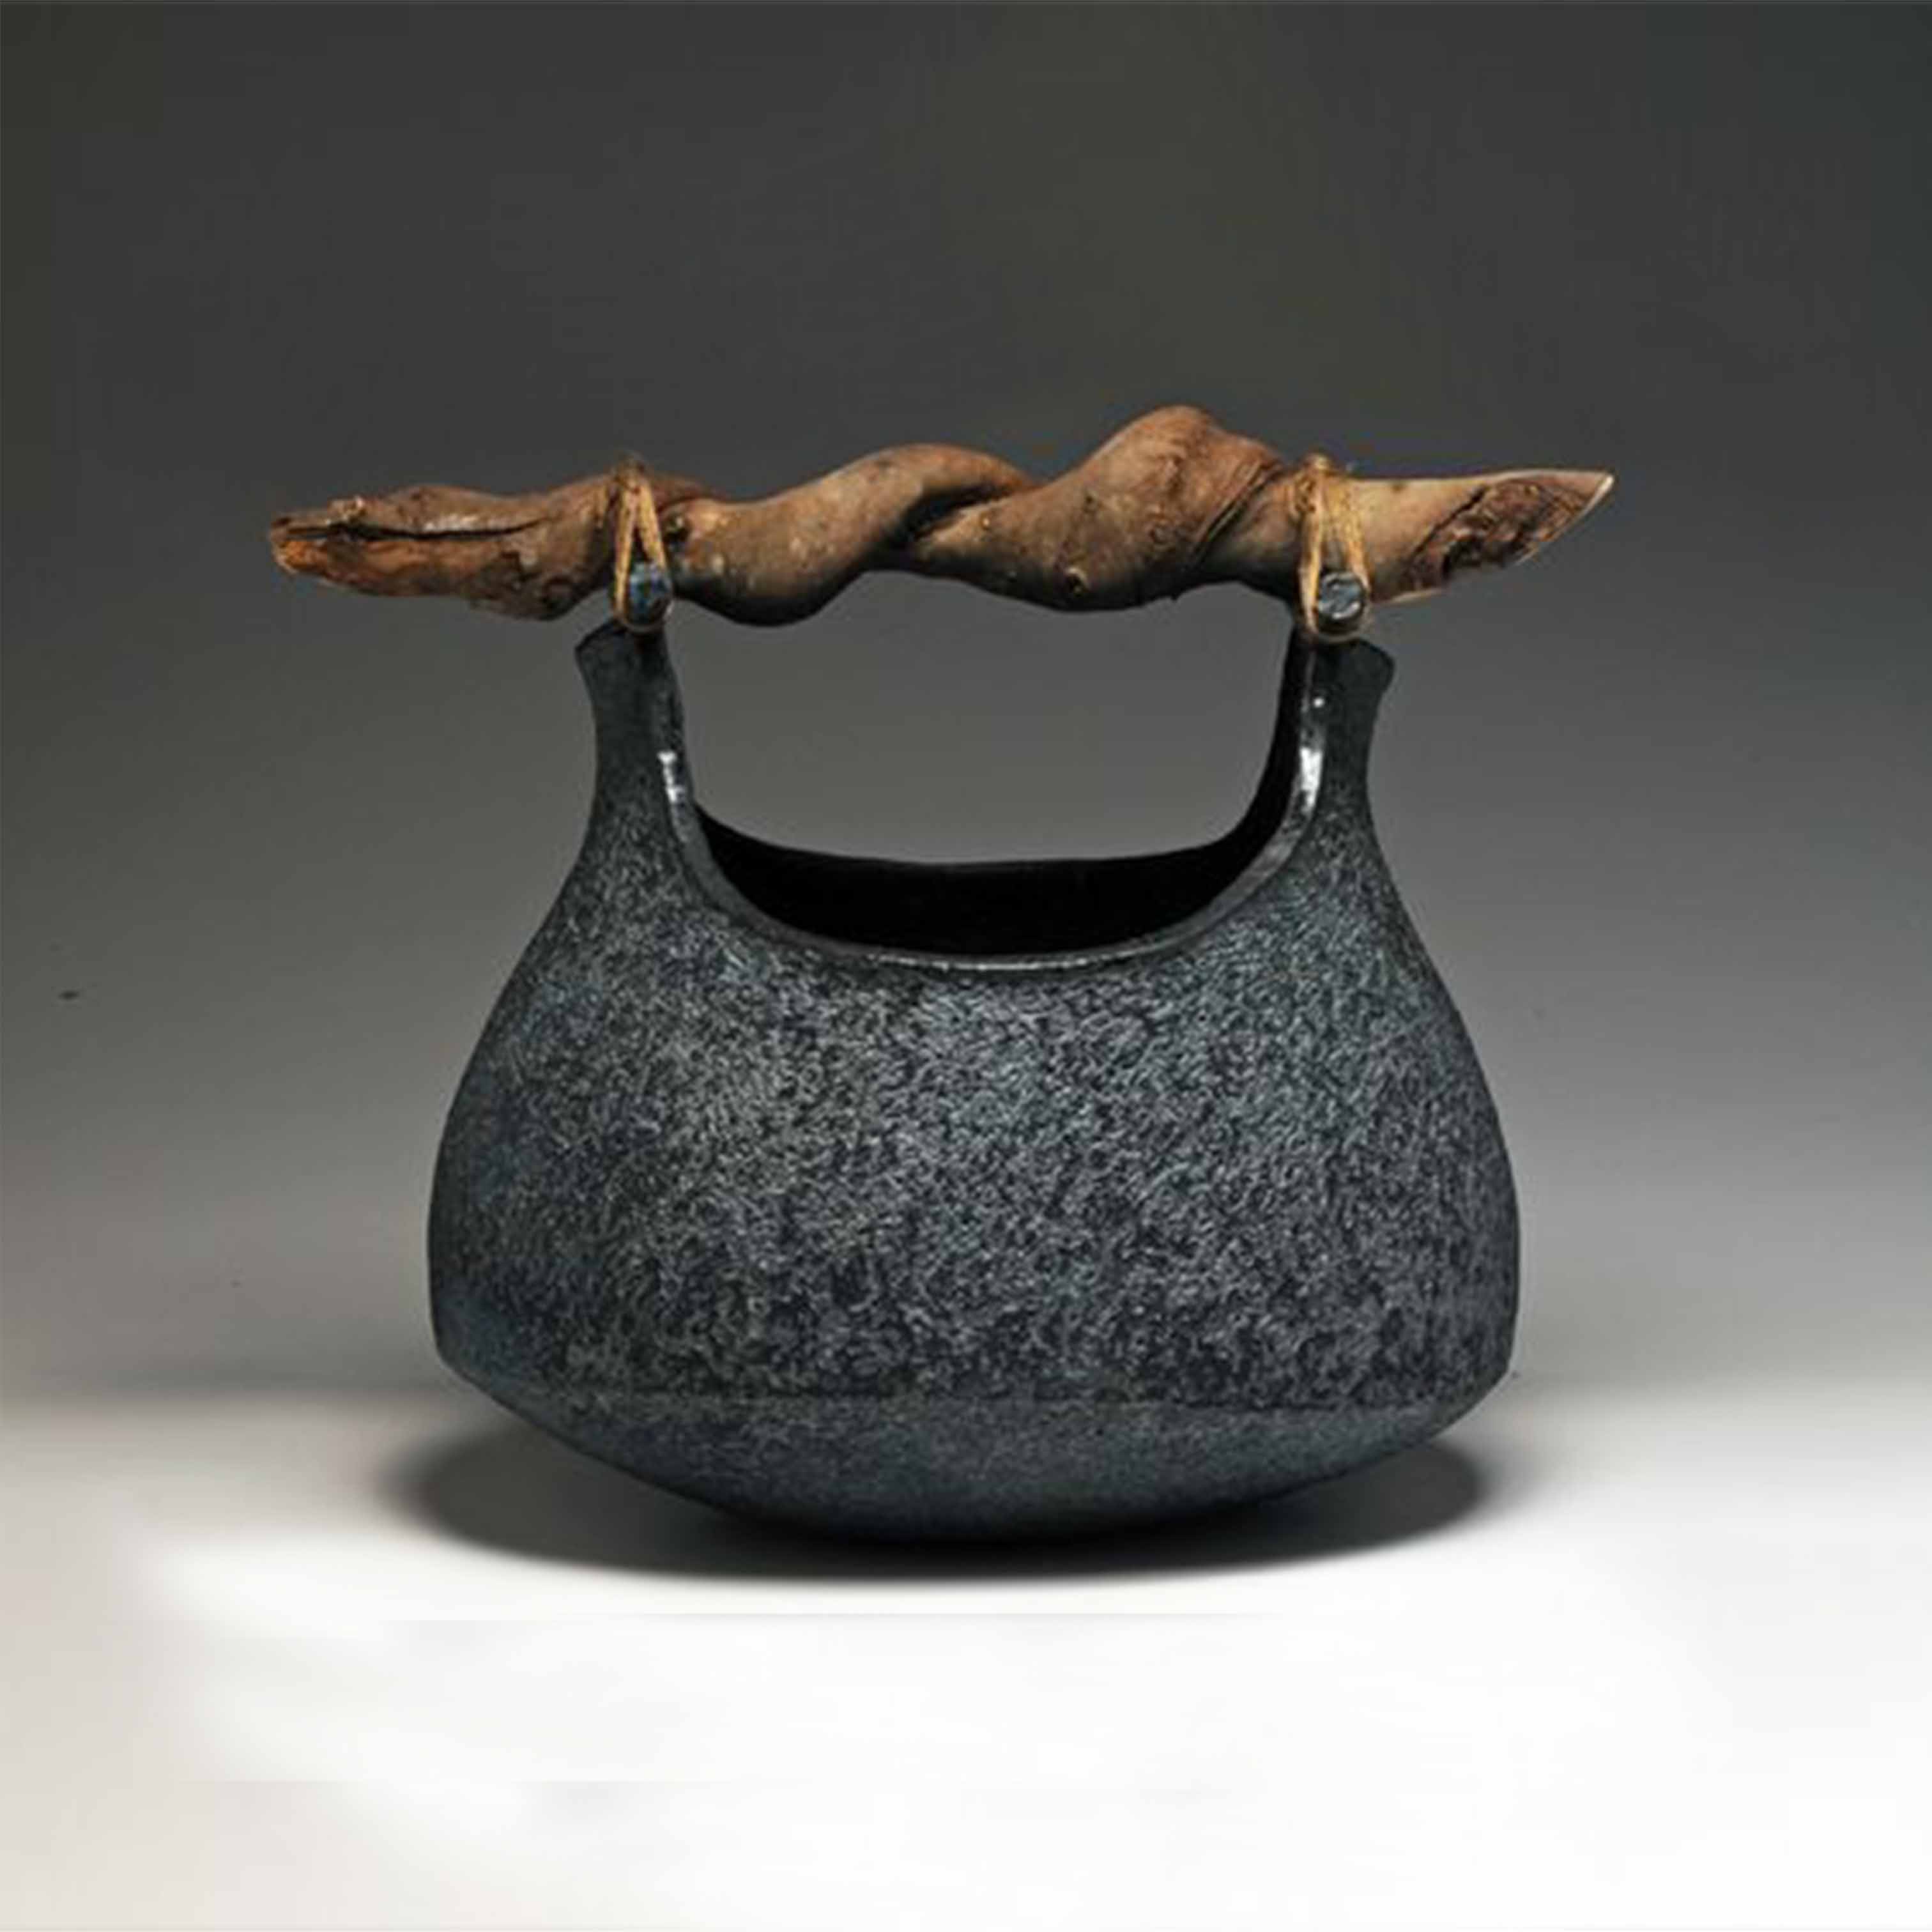 Decorative ceramic vase - DTT35LHFU